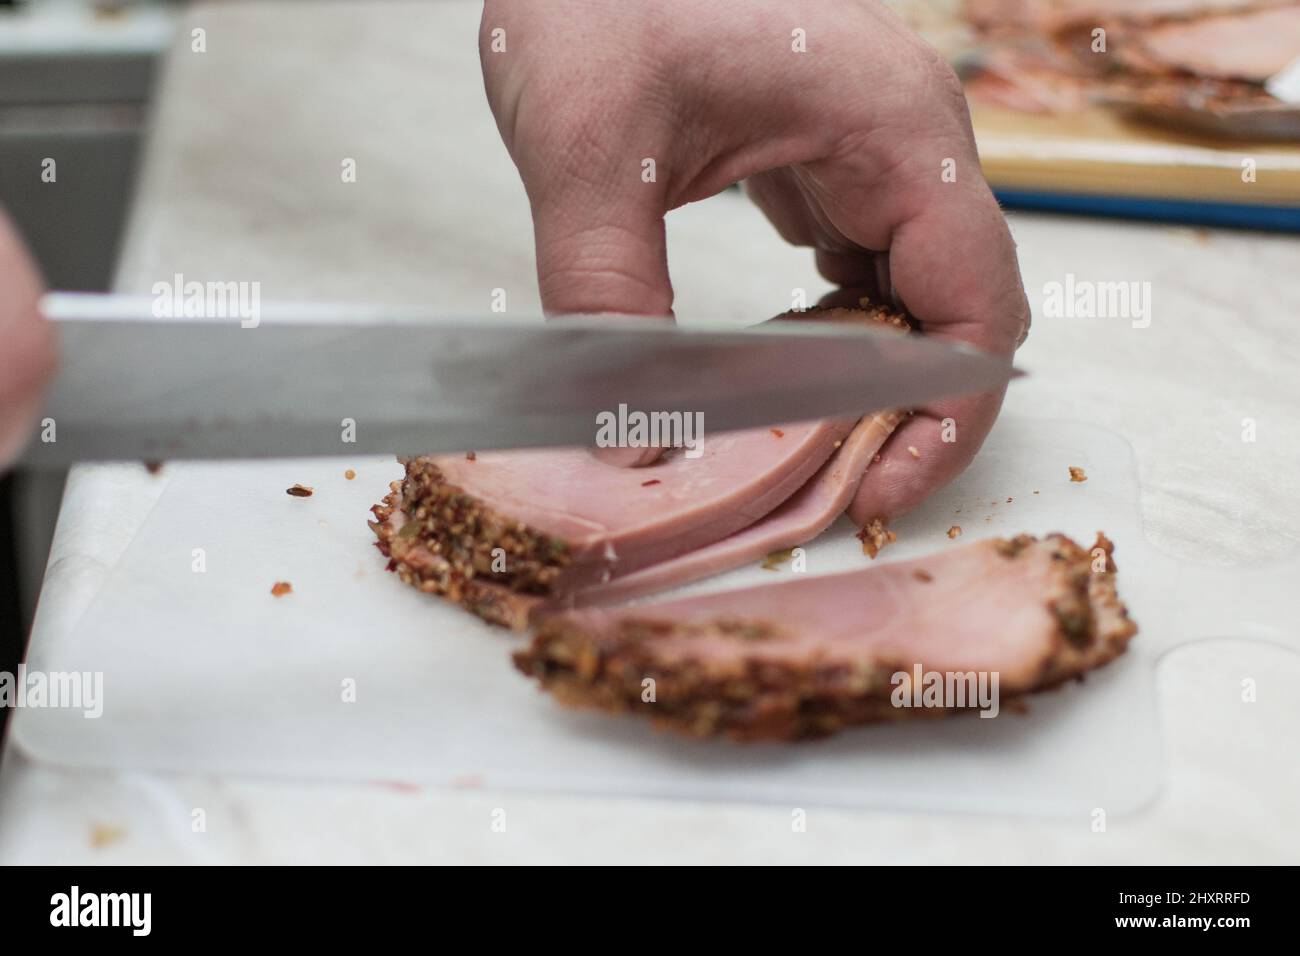 Des hommes ont coupé du jambon, préparé de la viande sur une planche à découper. Banque D'Images